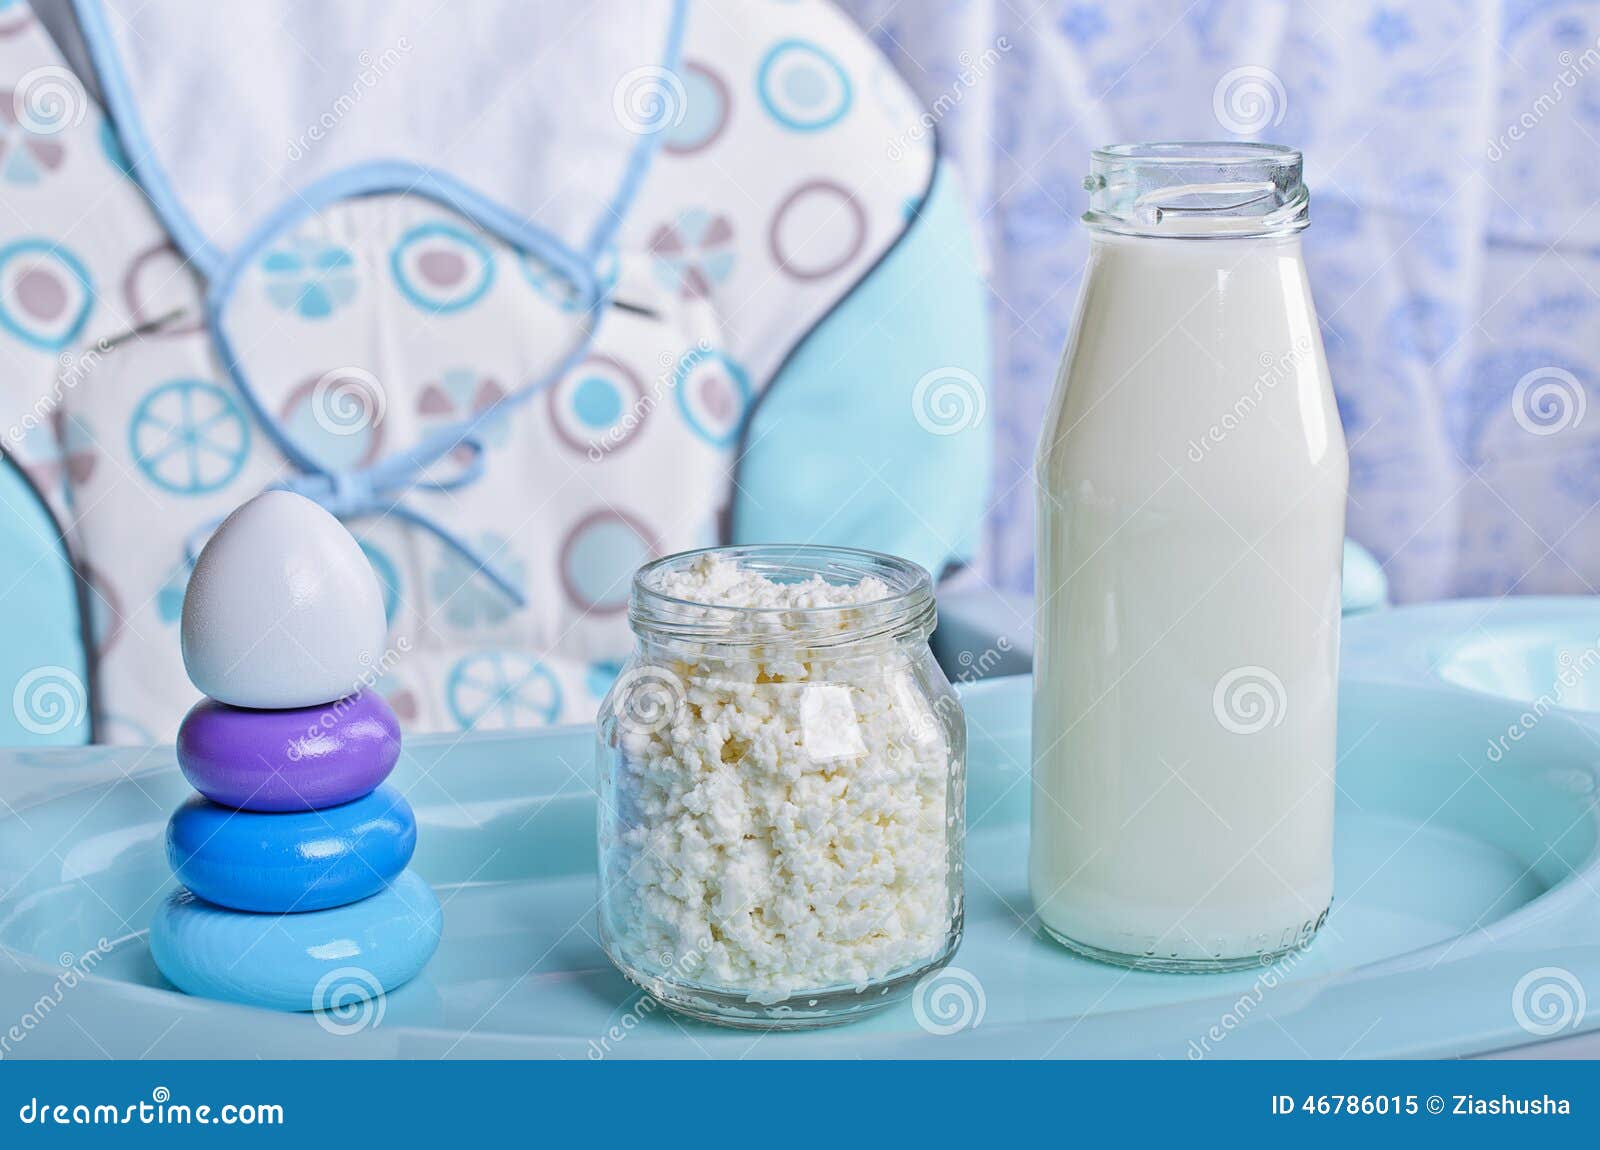 Молочные продукты ребенку 2 года. Молочные продукты. Детские молочные продукты. Детские кисломолочные продукты. Творог и кефир.